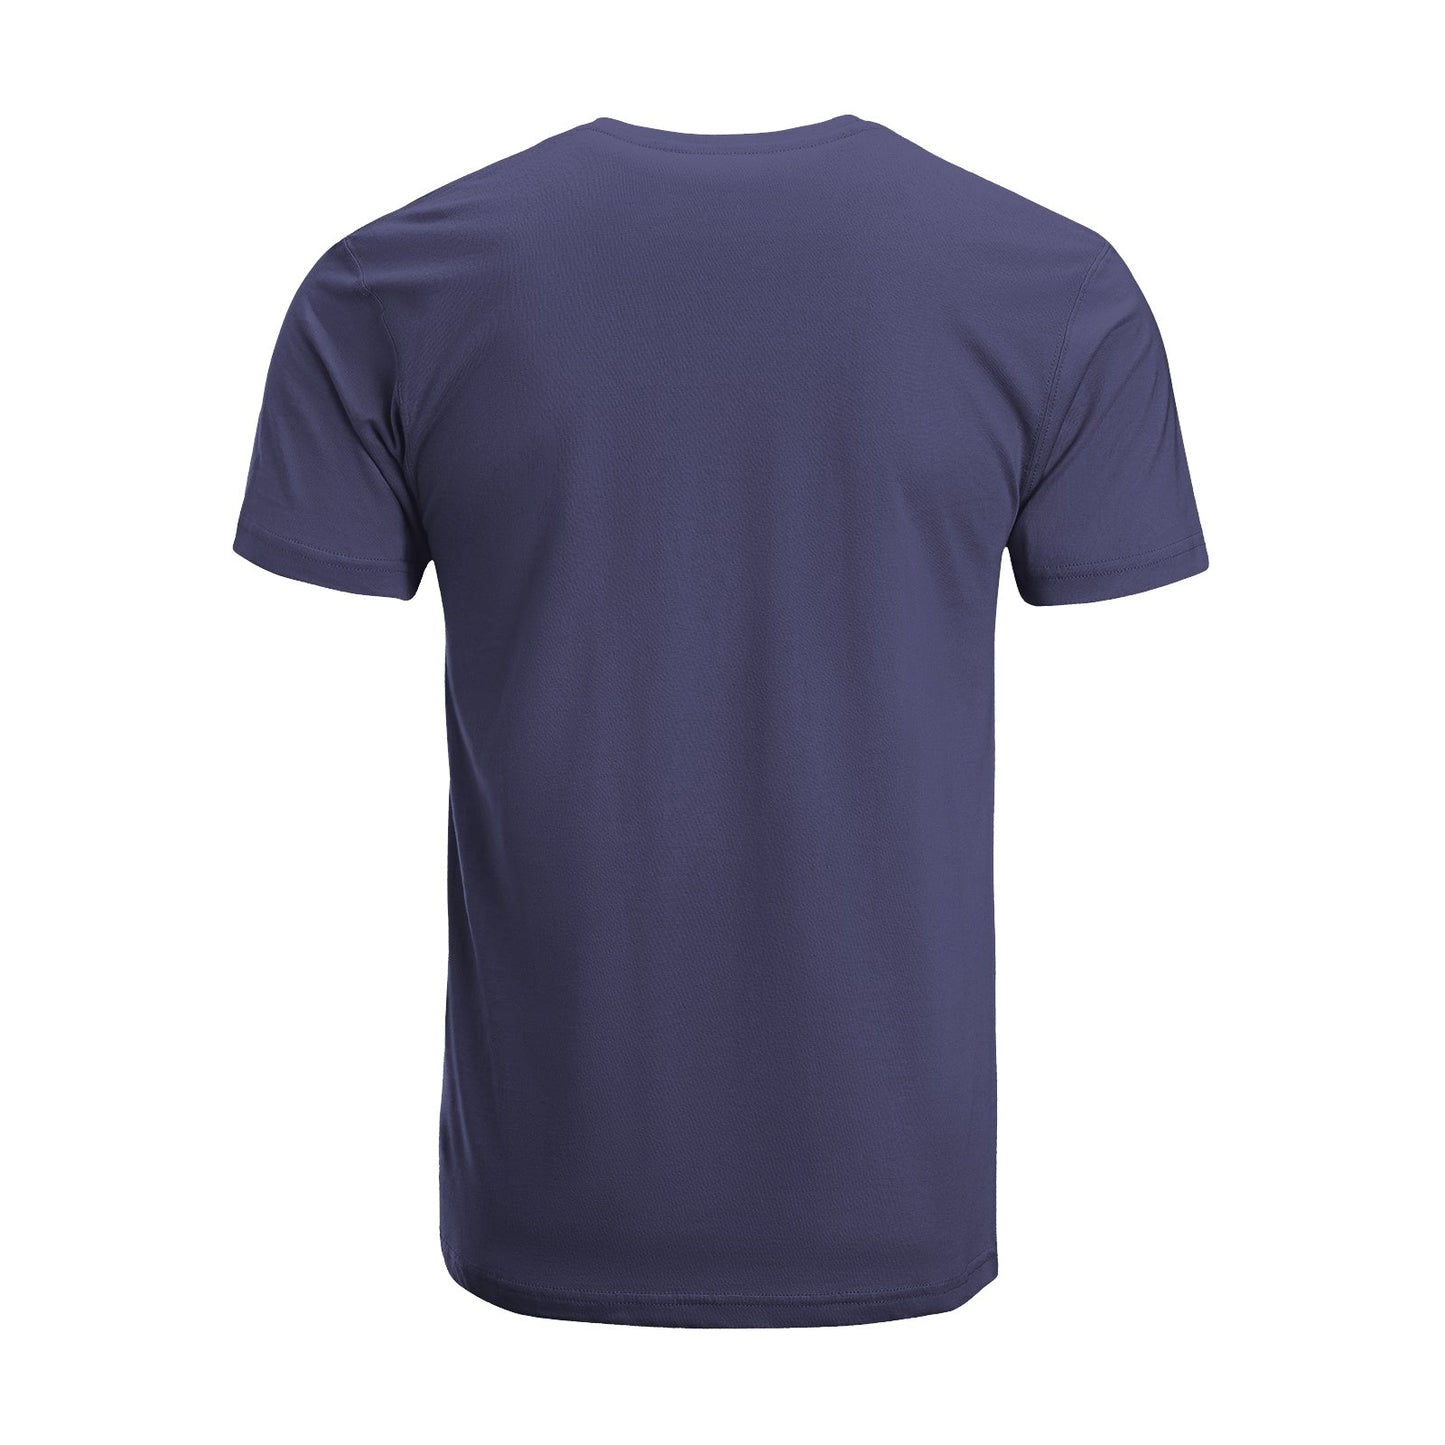 Unisex Short Sleeve Crew Neck Cotton Jersey T-Shirt TRUCK 45